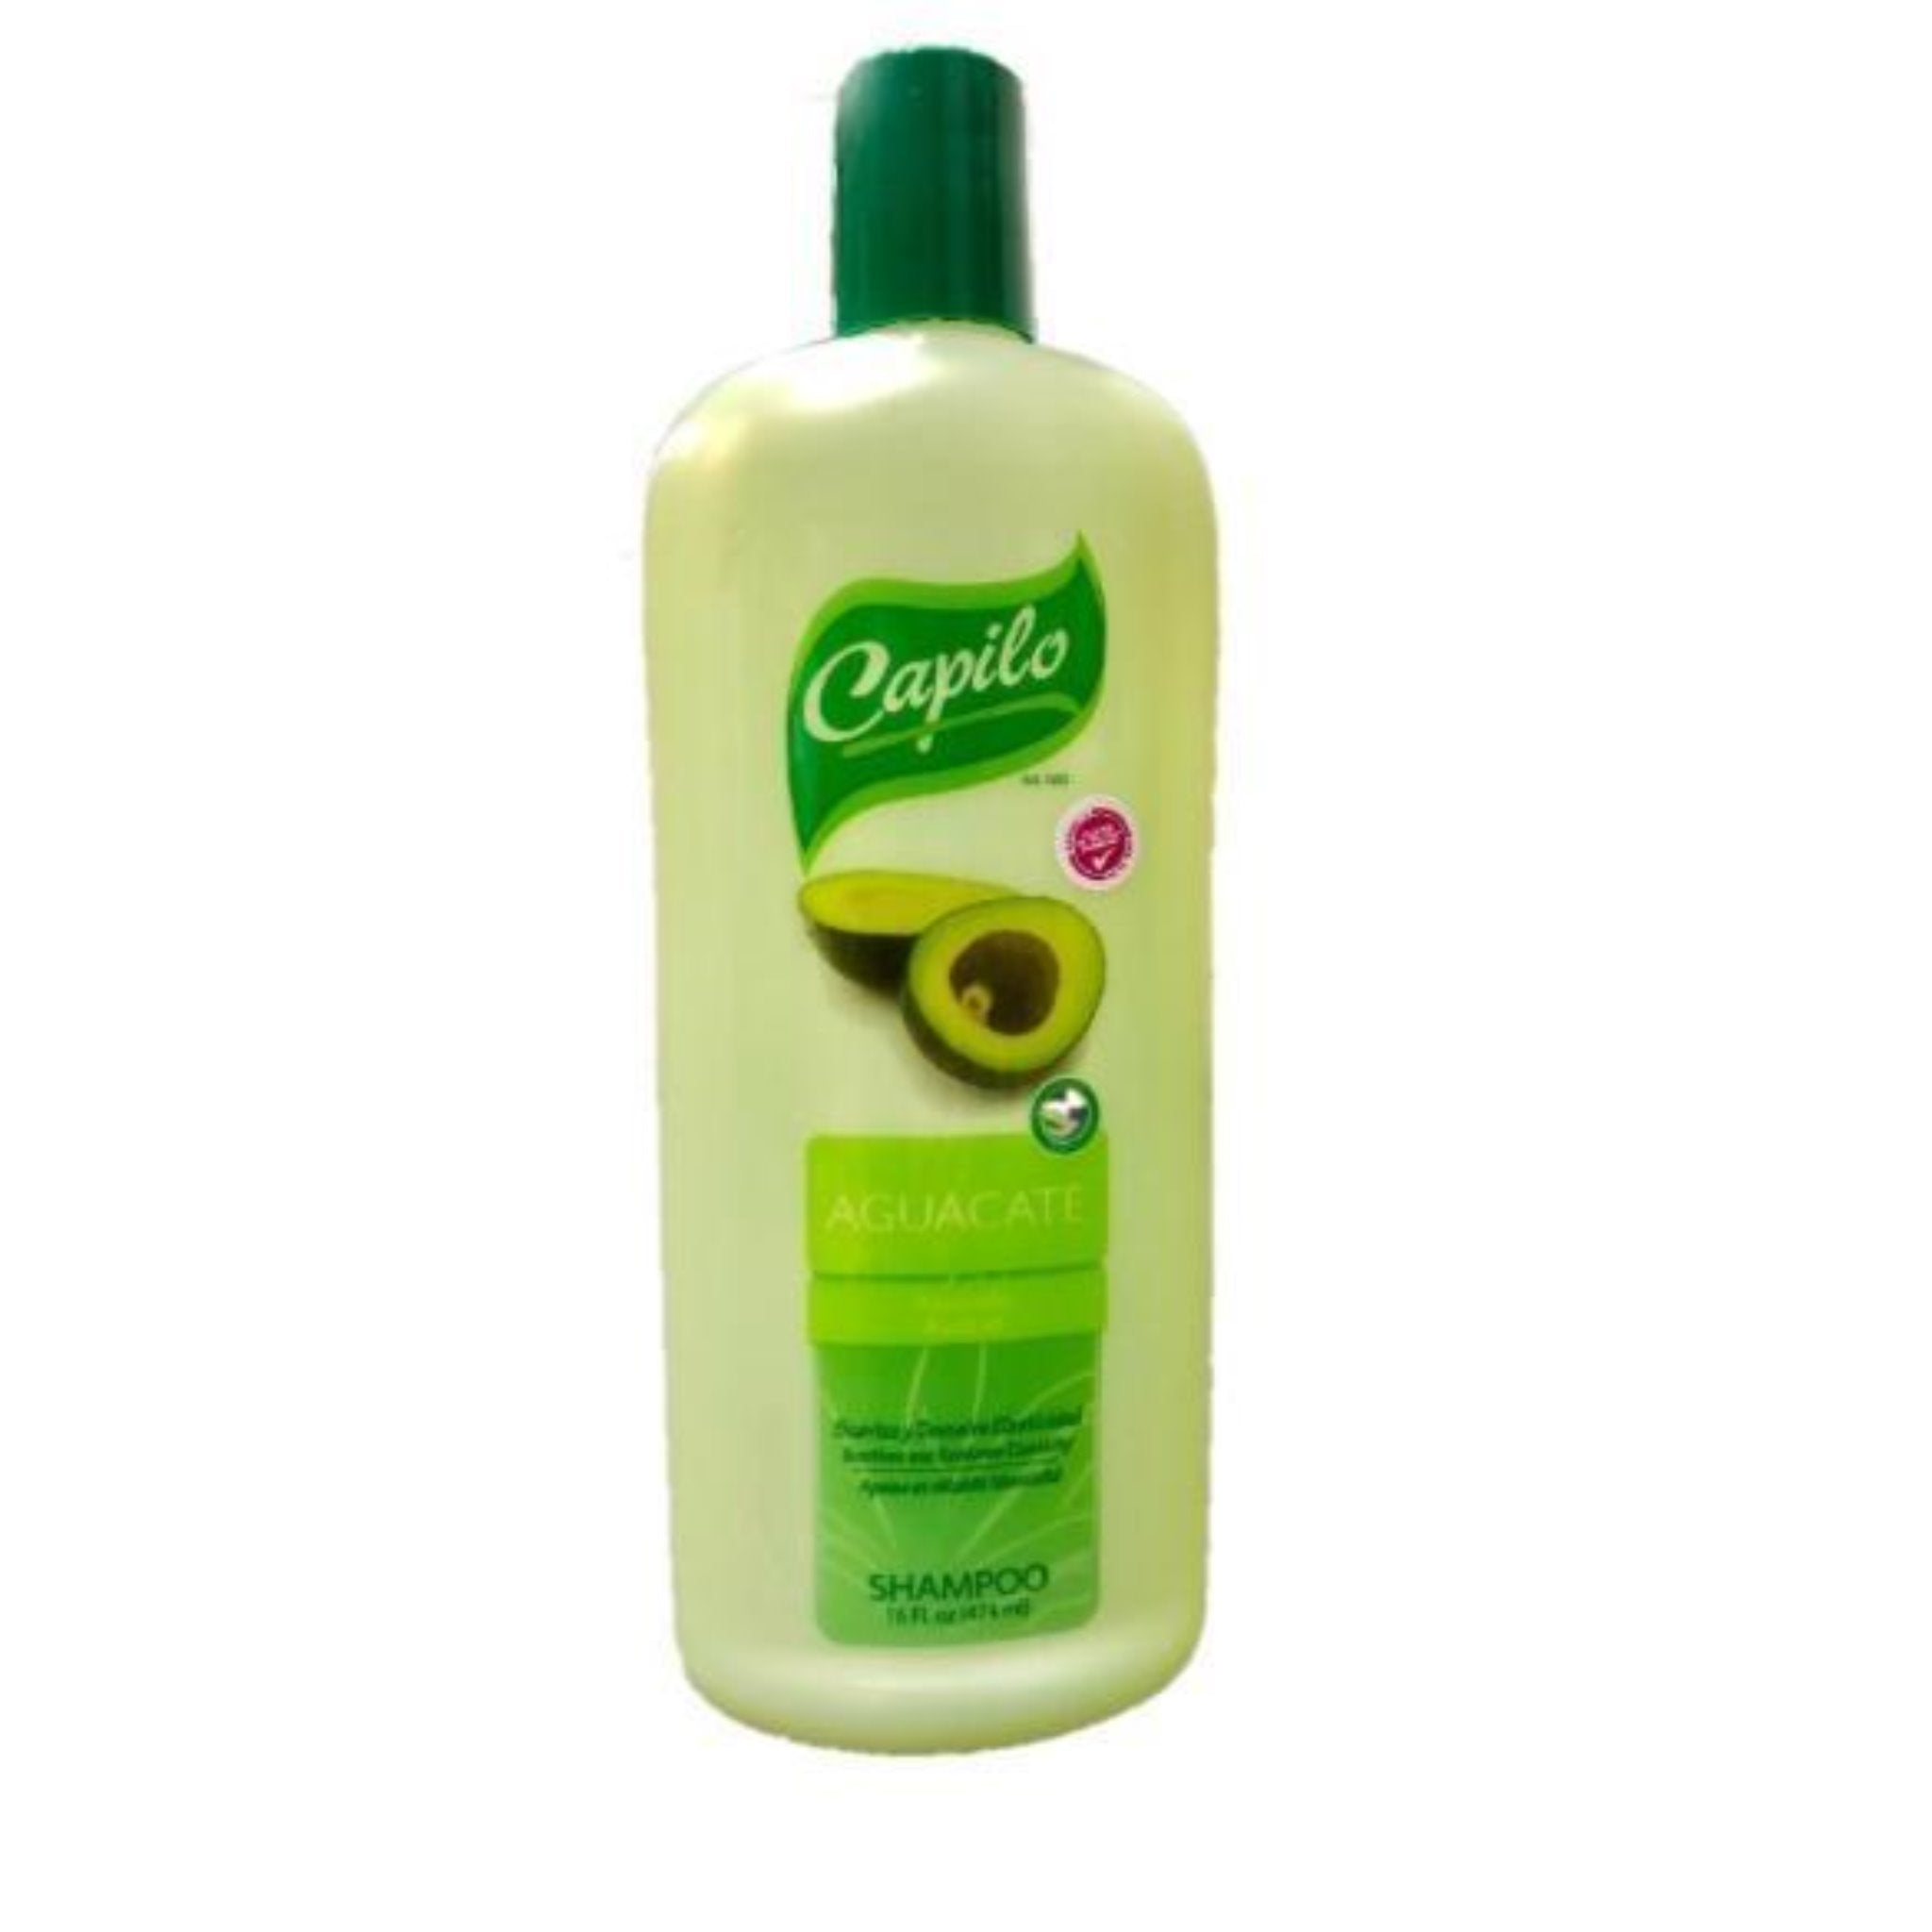 Capilo Avocado Shampoo 16 Oz